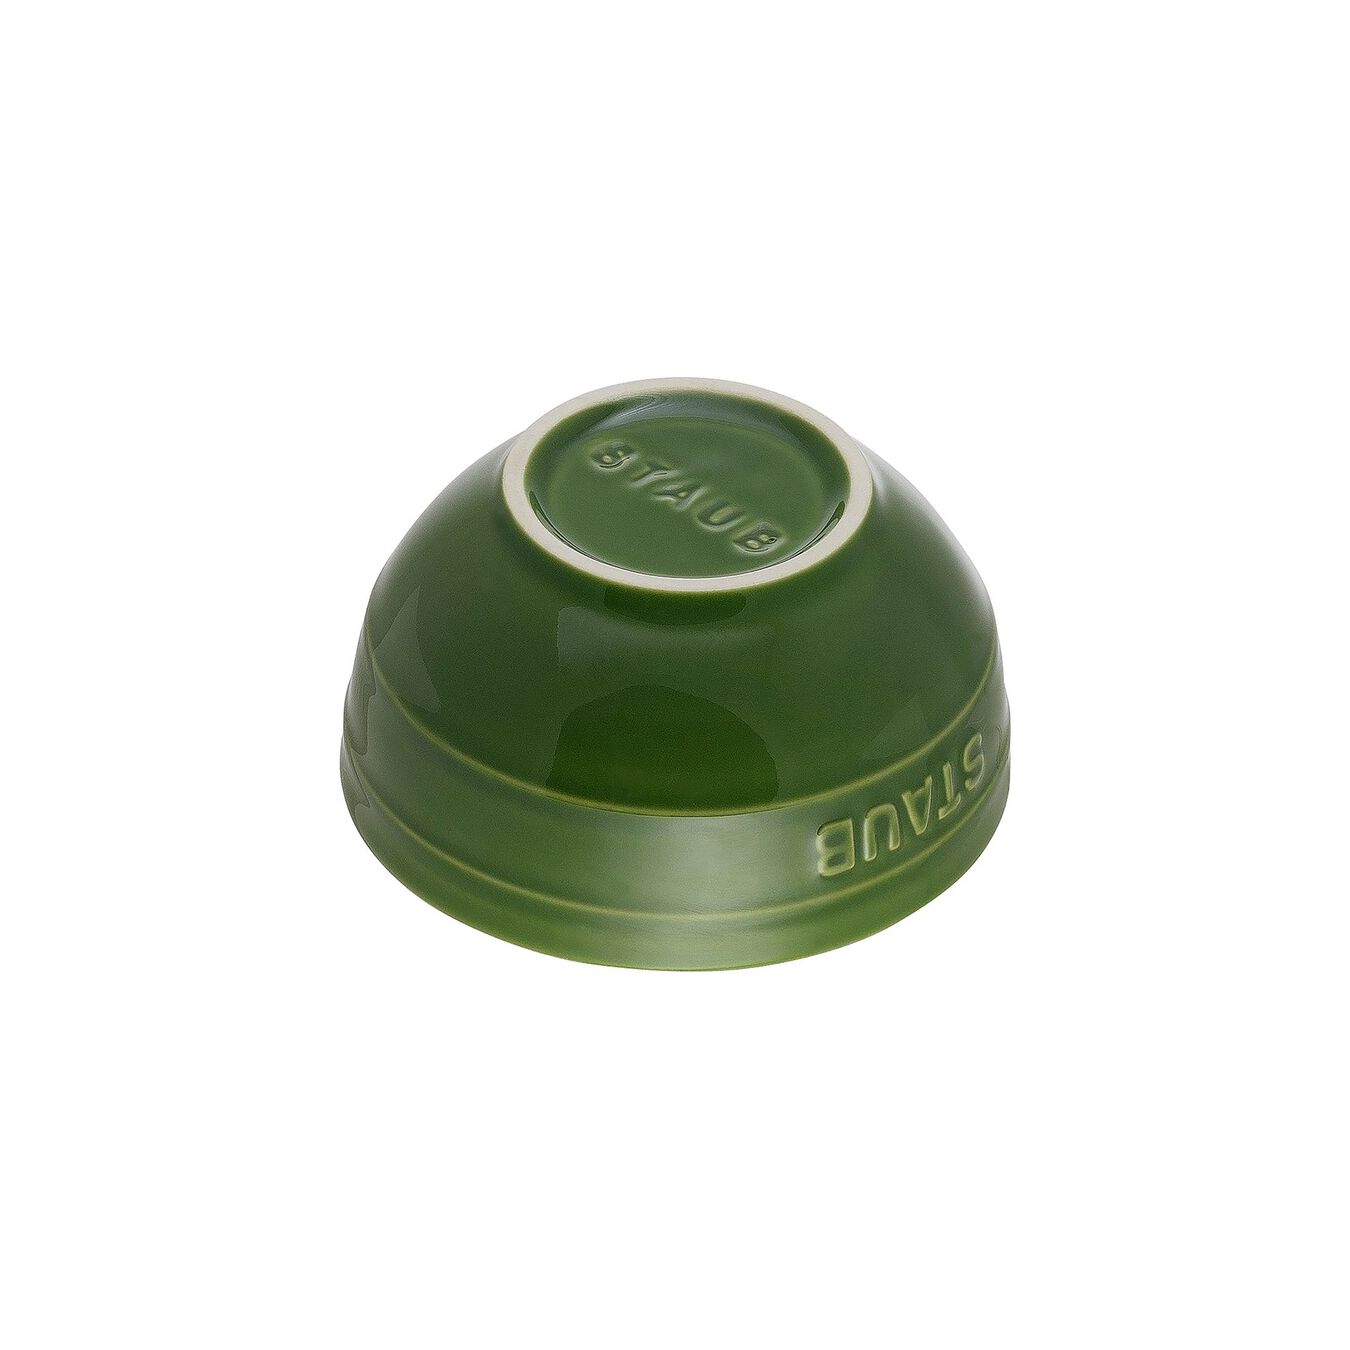 12 cm round Ceramic Bowl basil-green,,large 2